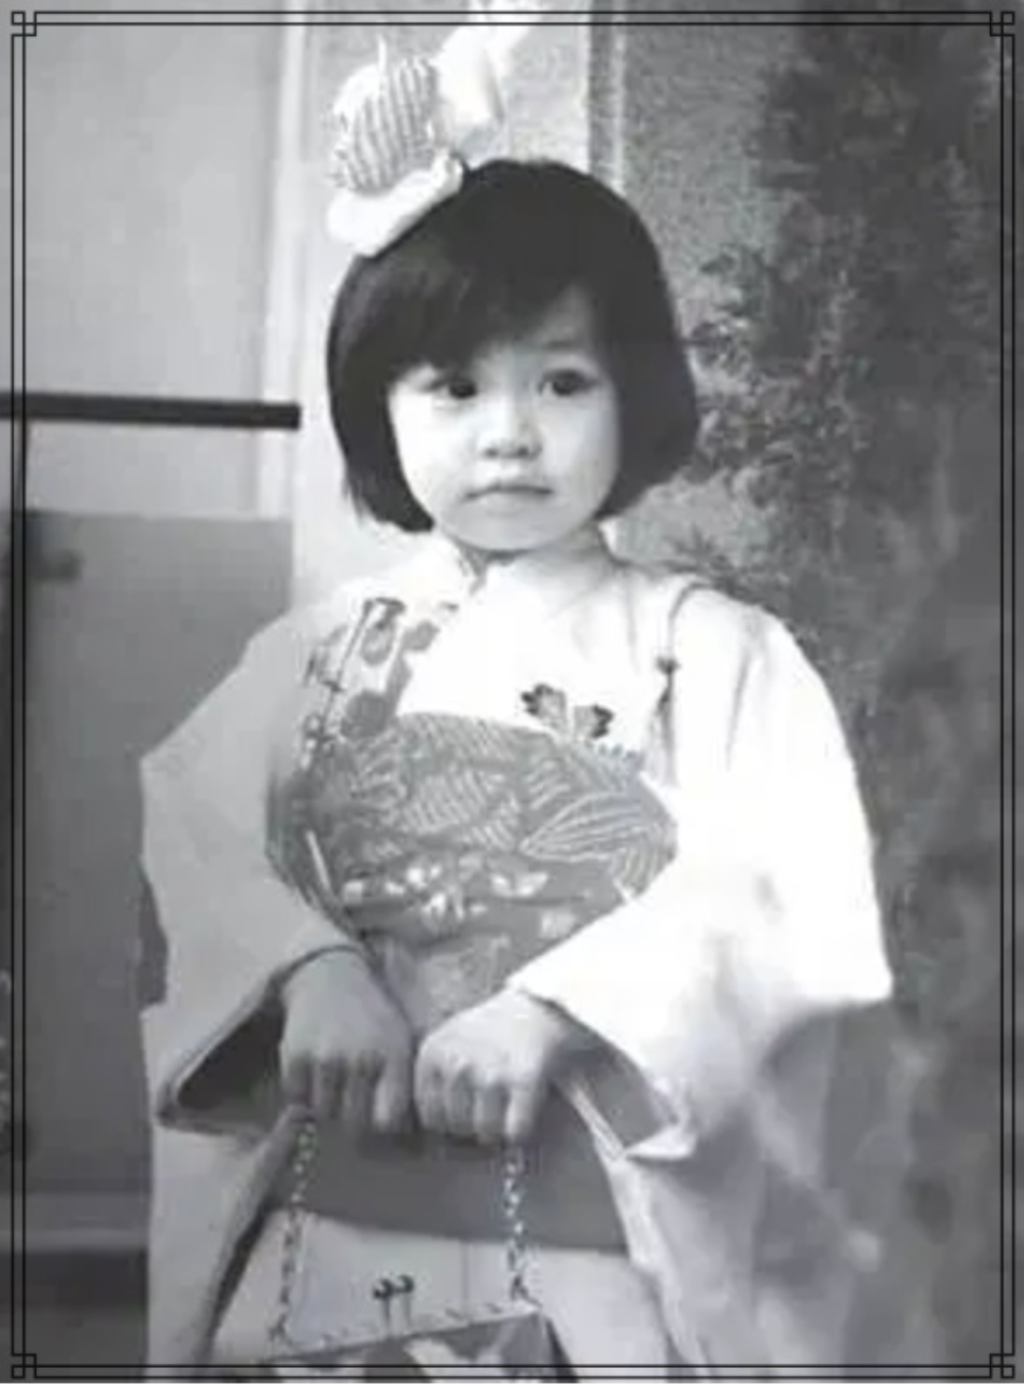 宇垣美里さんの幼少期の画像